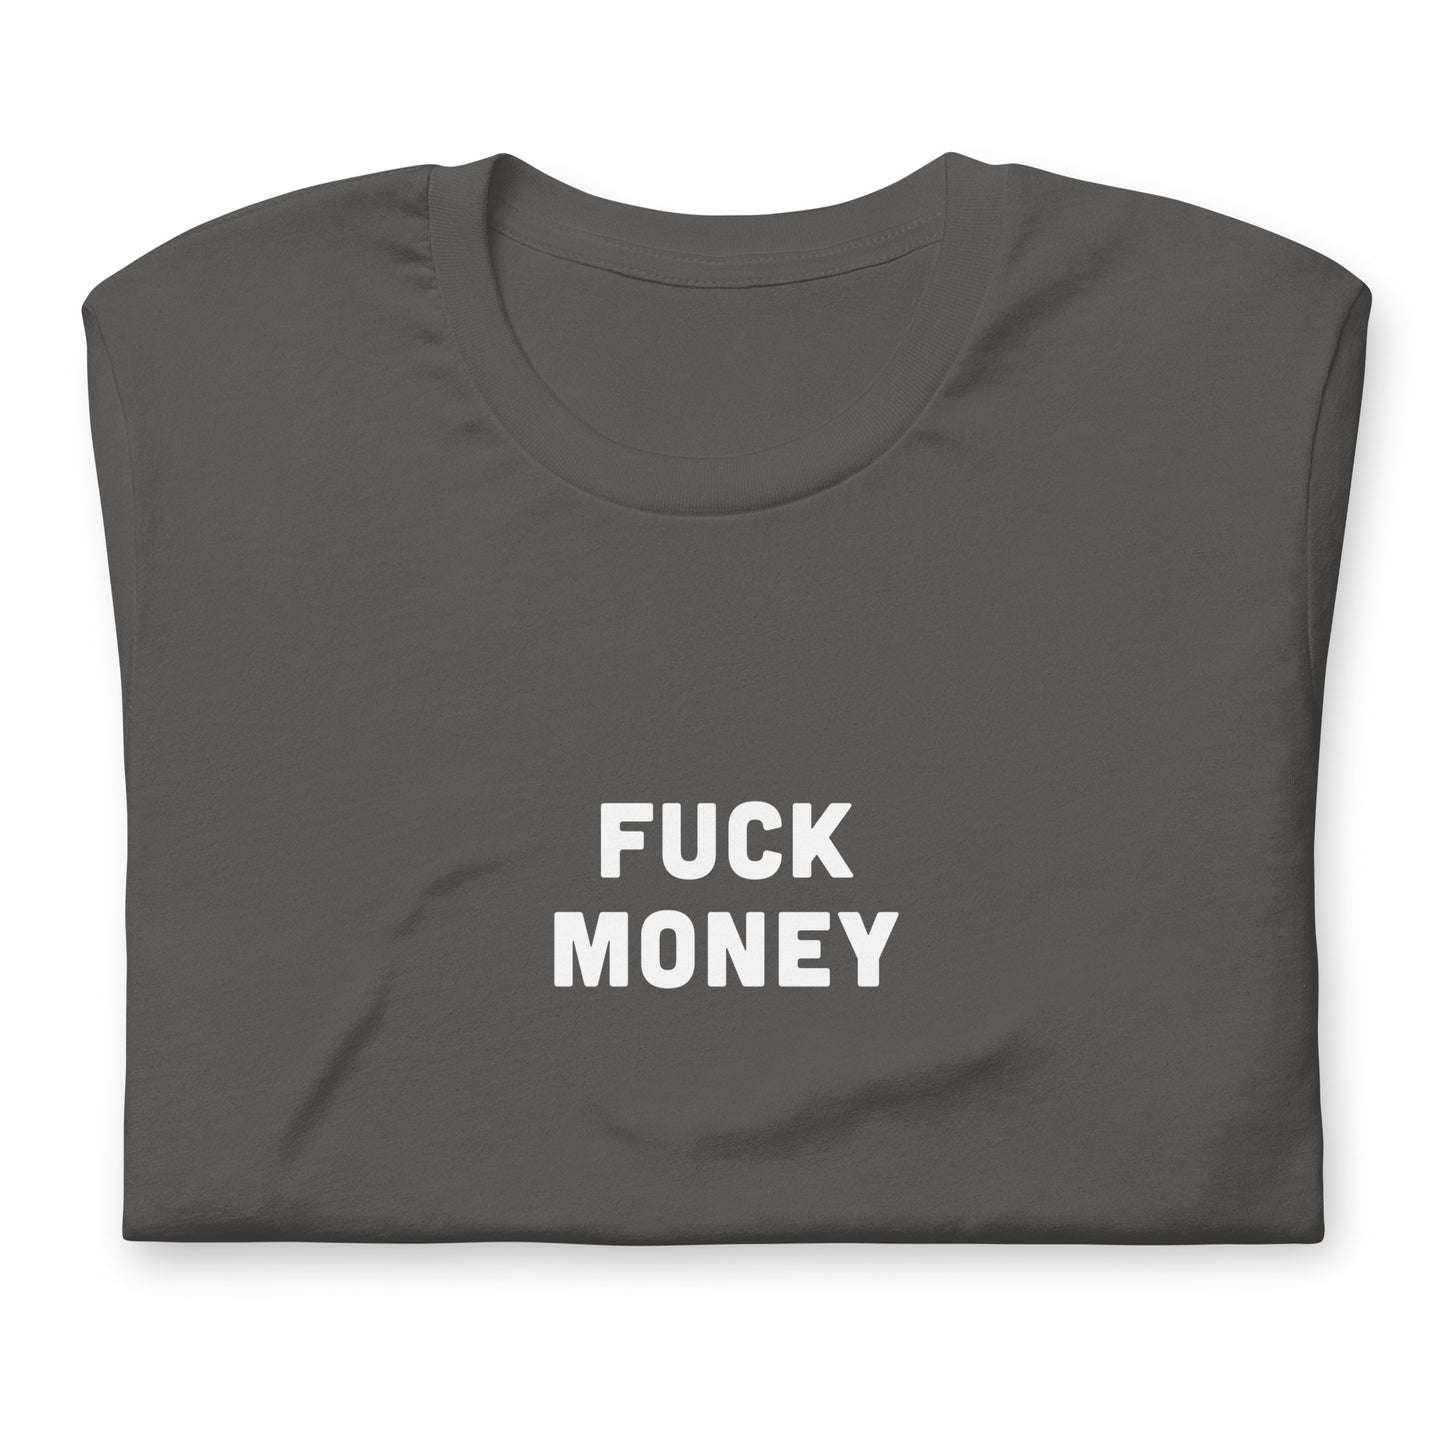 Fuck Money T-Shirt Size 2XL Color Black